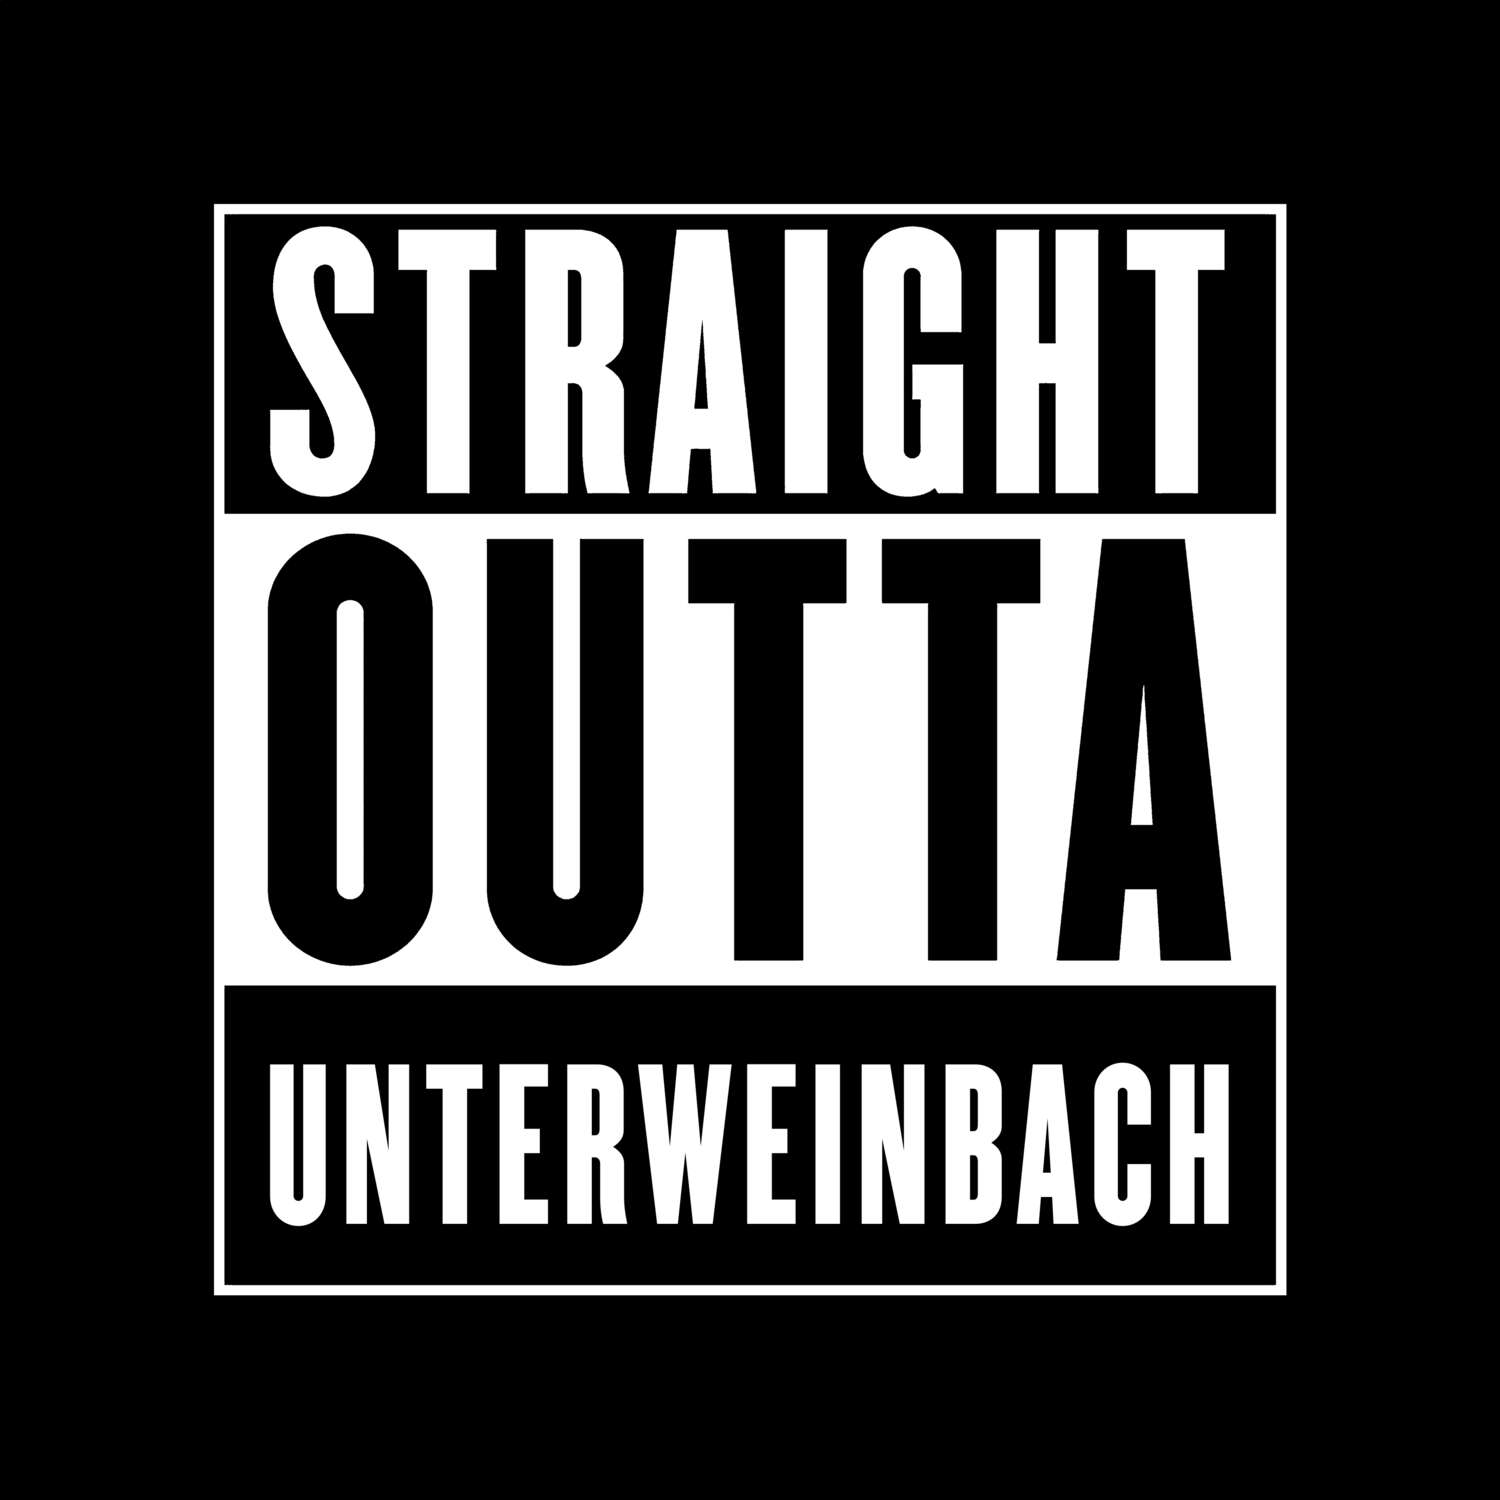 Unterweinbach T-Shirt »Straight Outta«